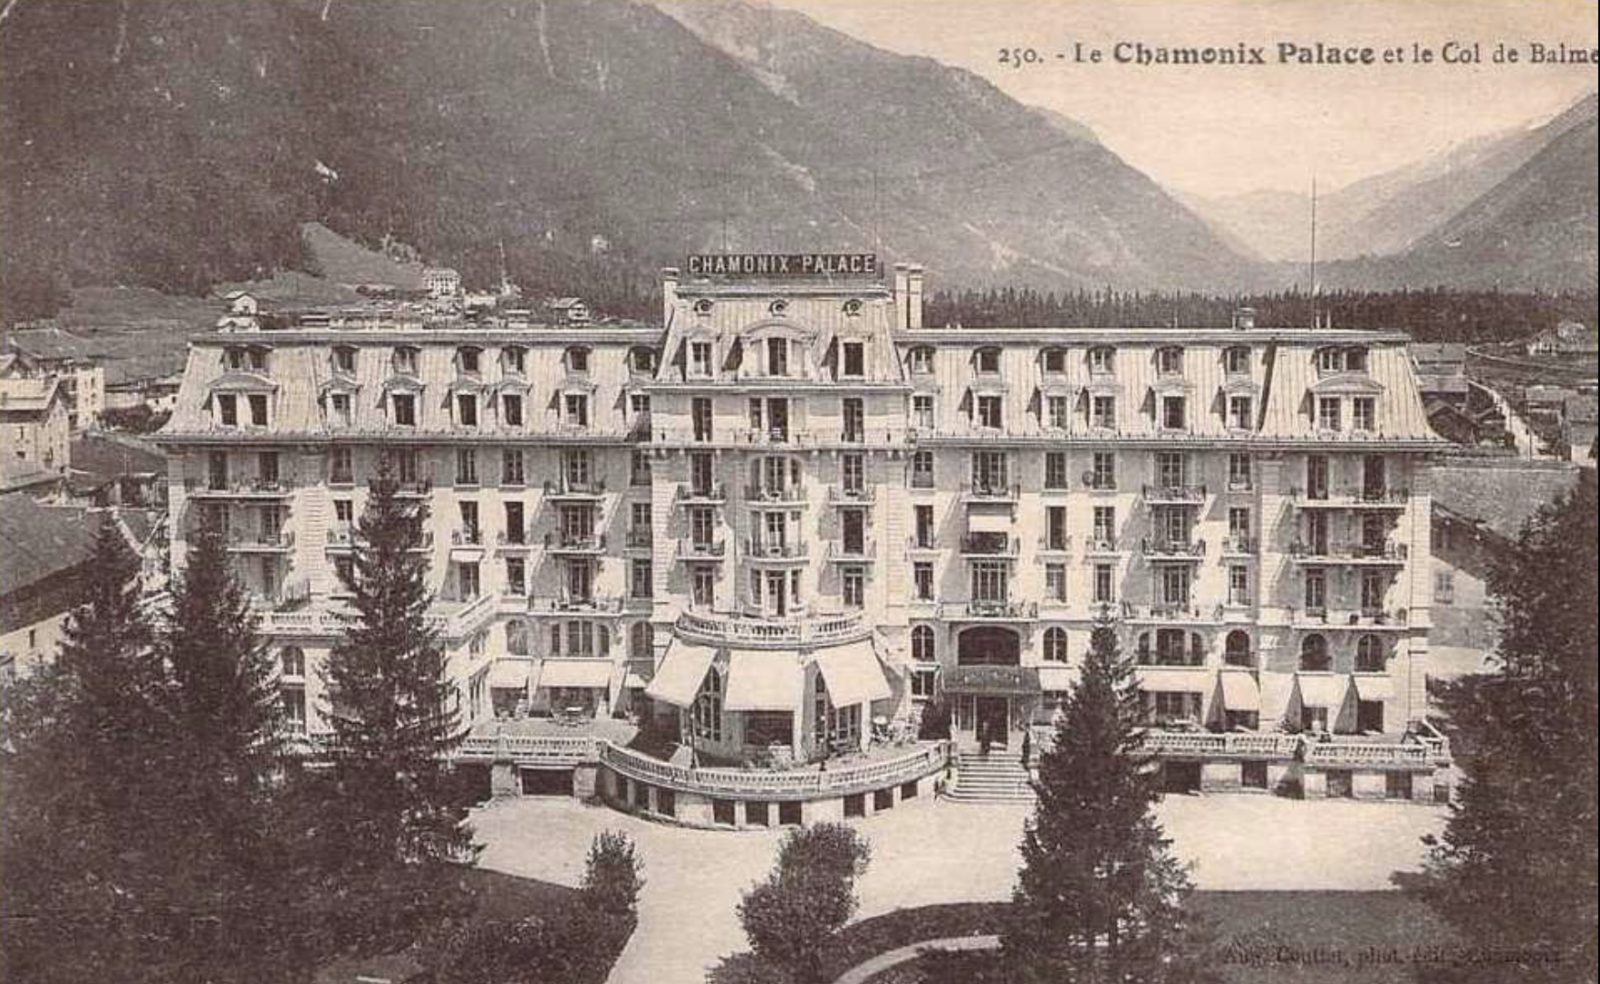 Chamonix Palace